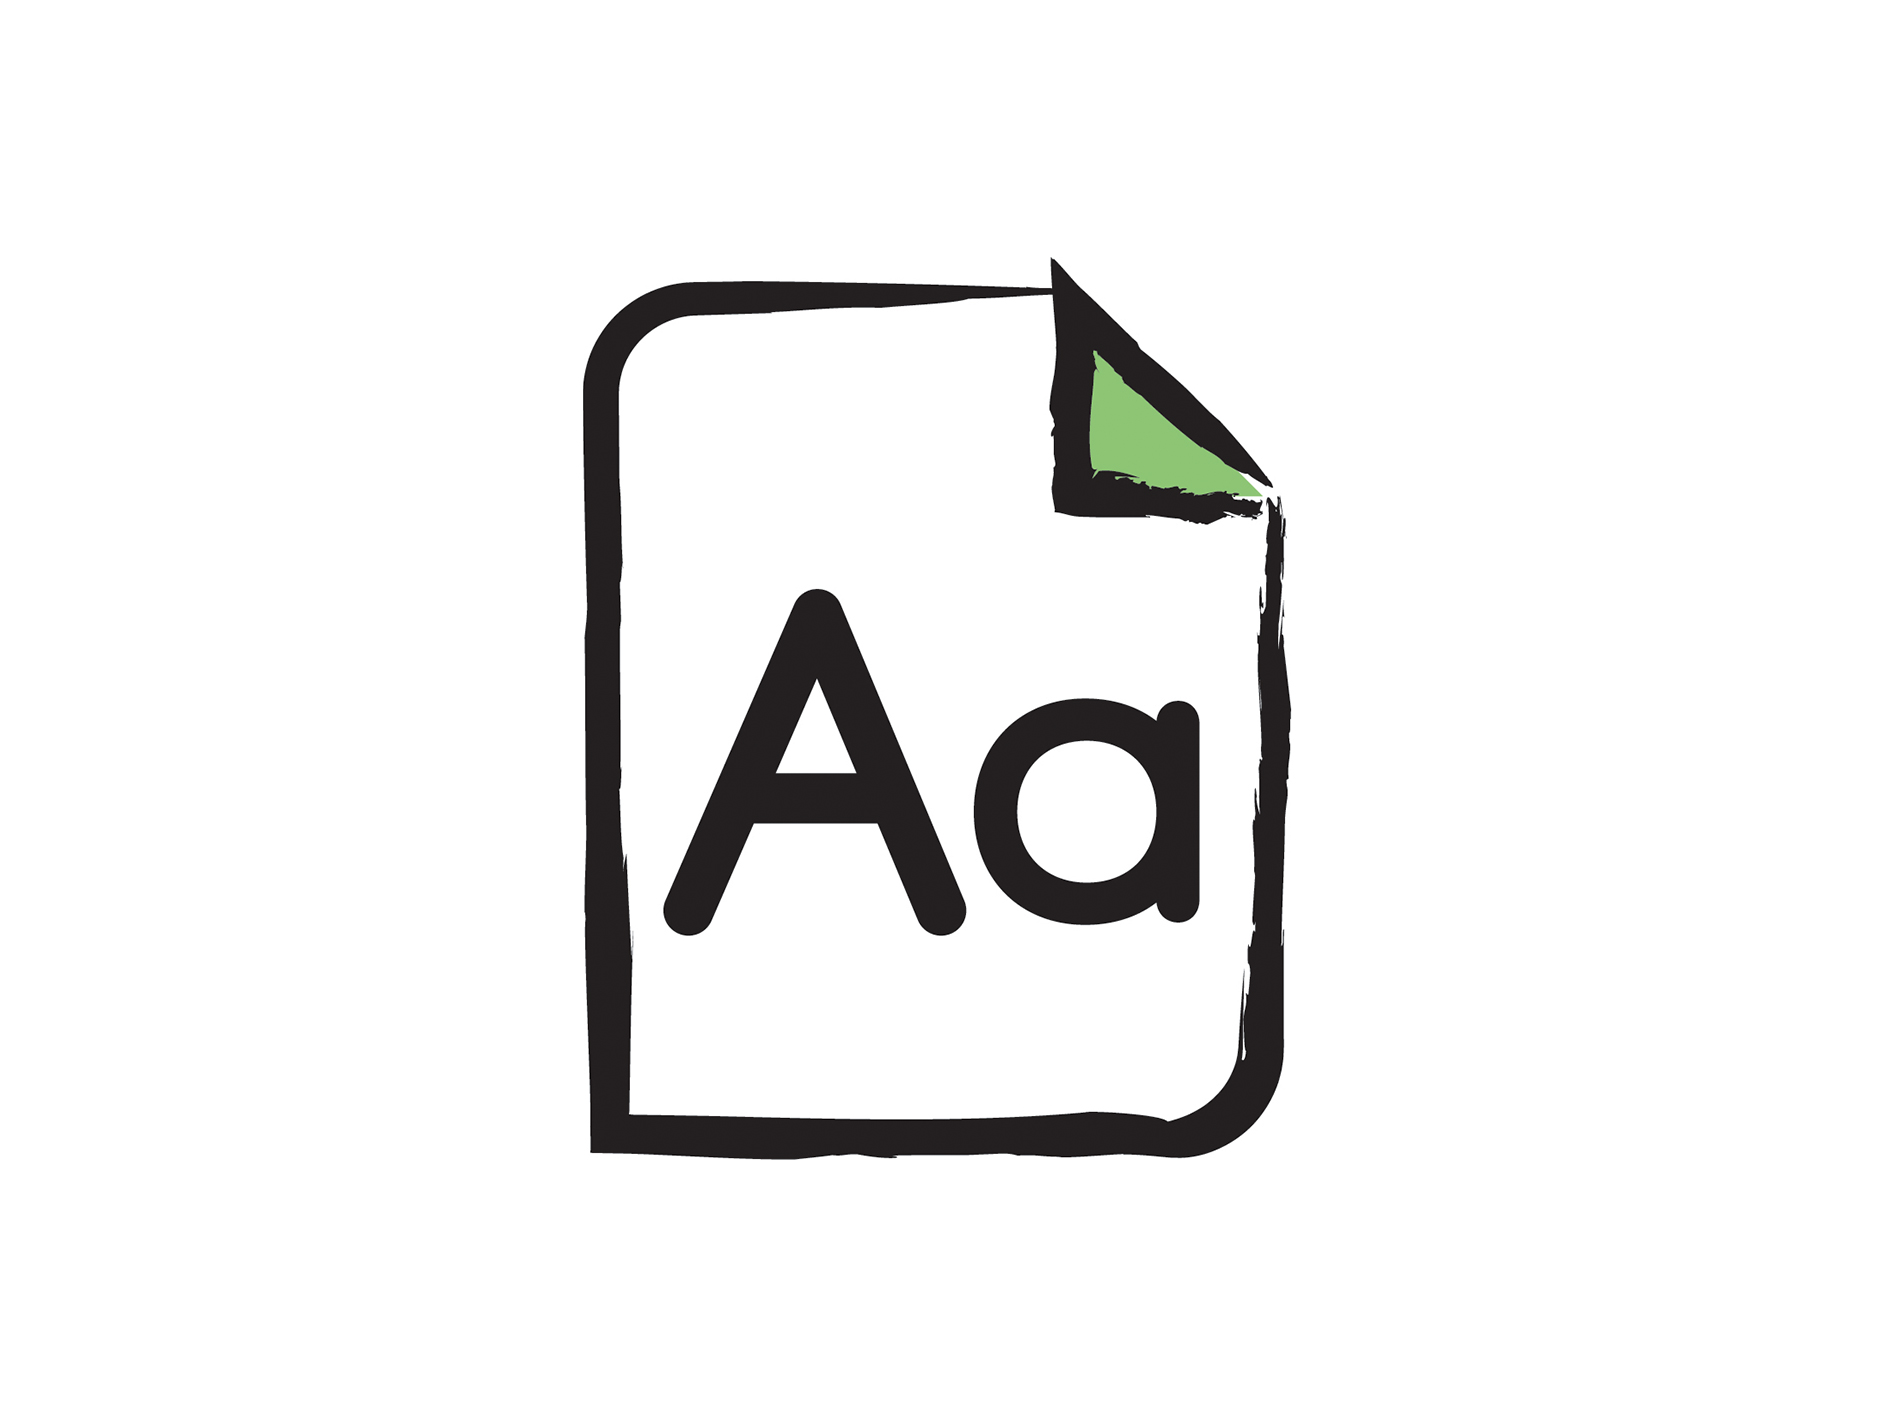 L’icône gros caractères. L’illustration d’une feuille de papier avec un grand « A » en haut.